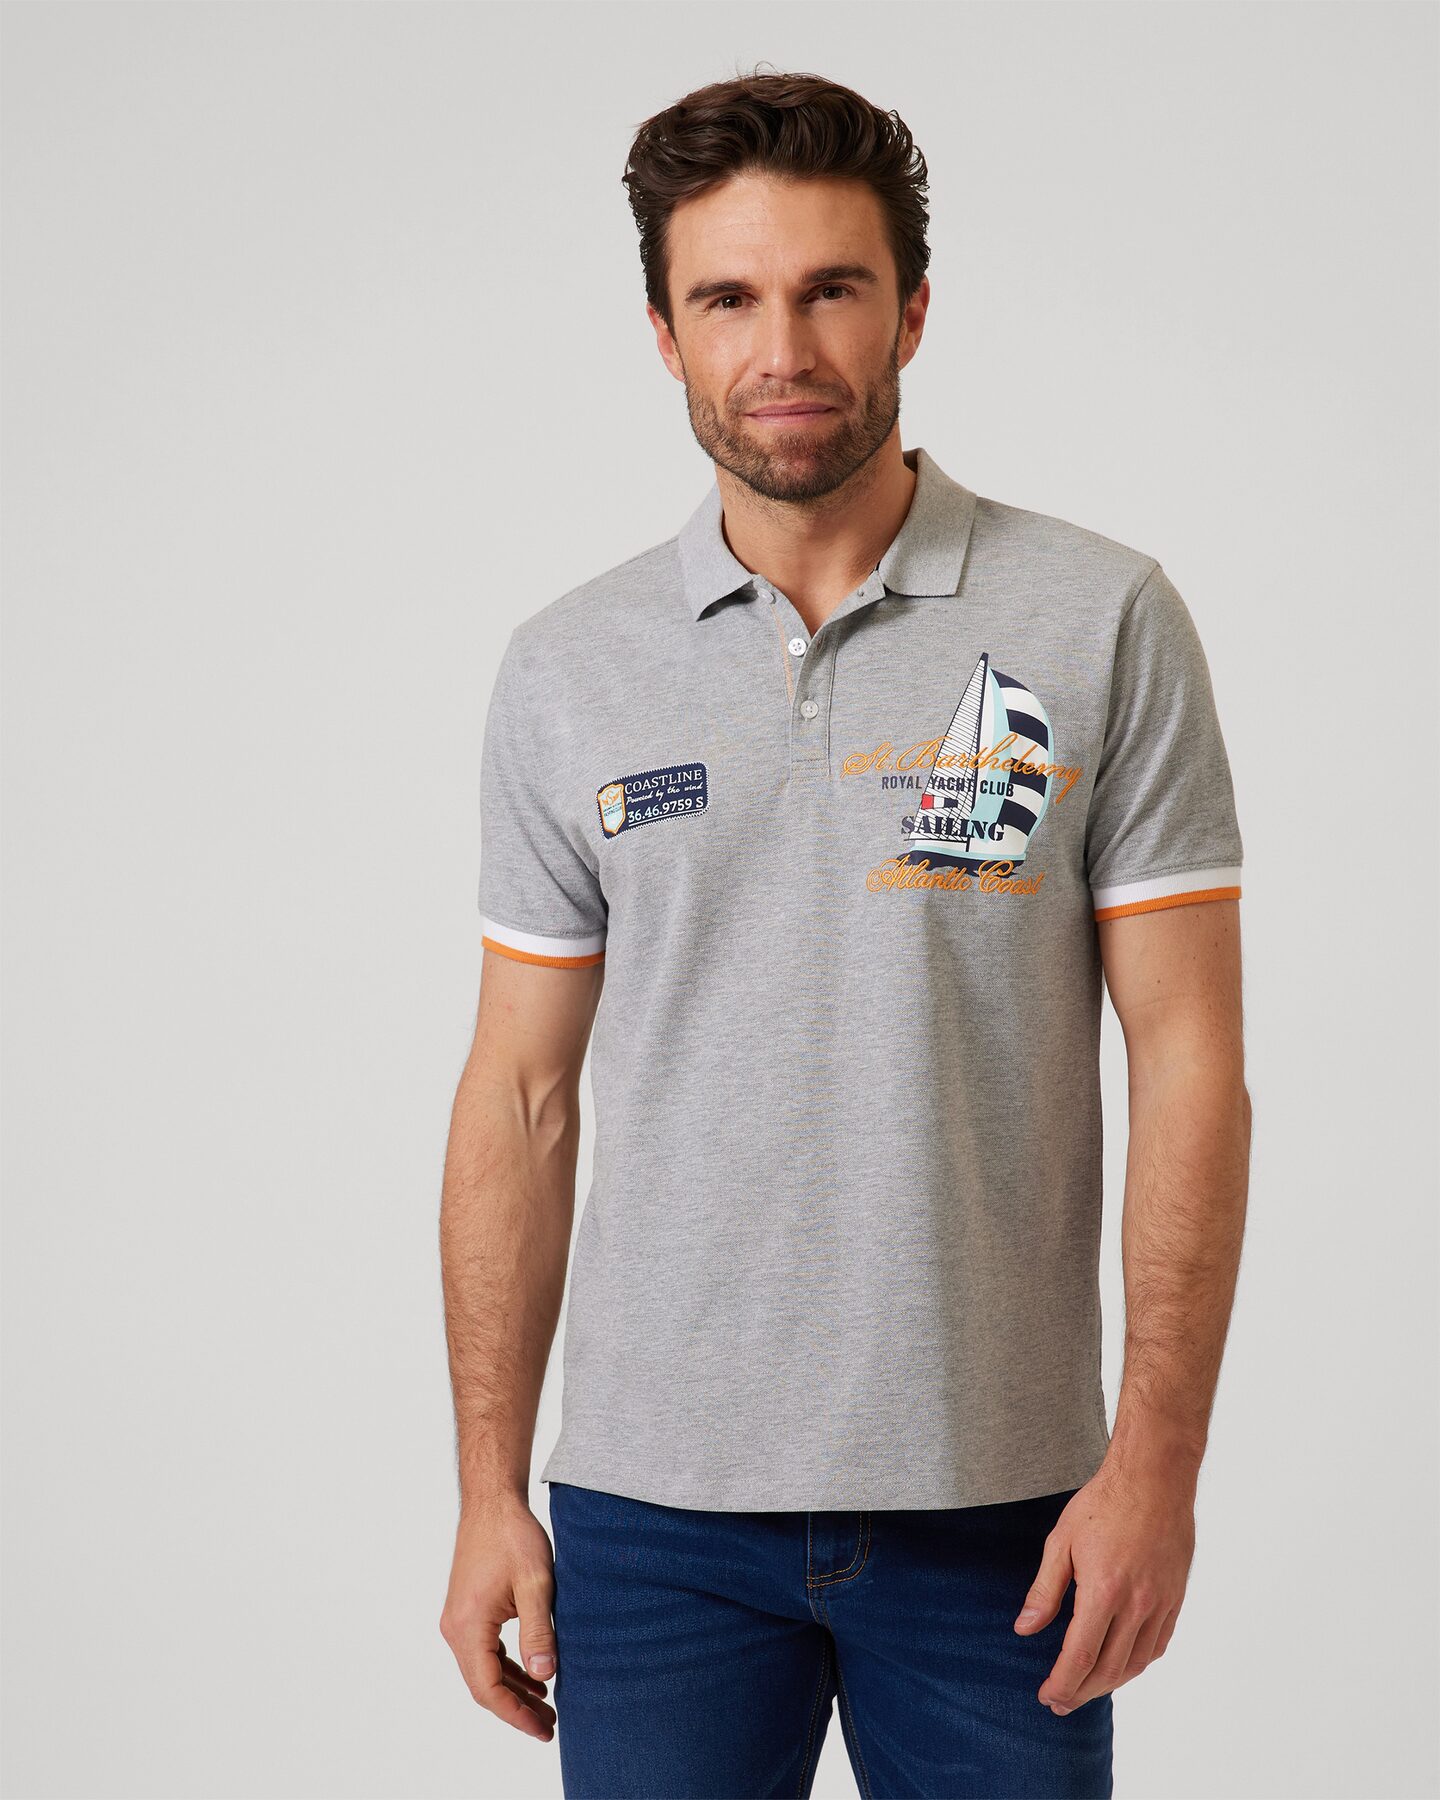 Produktabbildung für Poloshirt "Sailing"